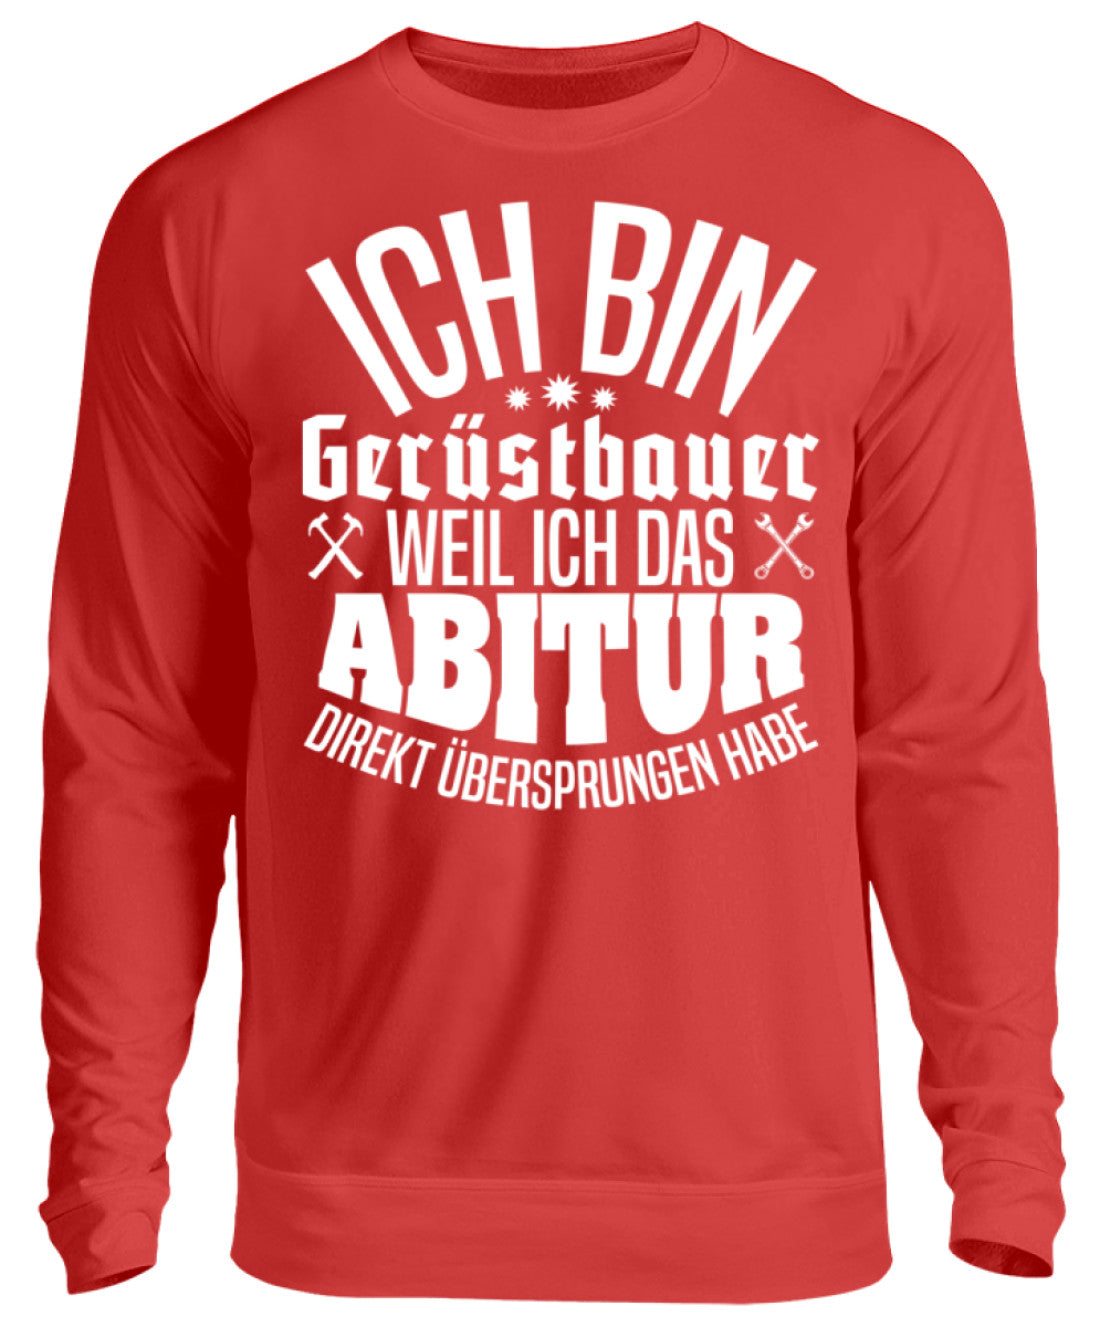 Gerüstbauer / Abitur  - Unisex Pullover €32.95 Gerüstbauer - Shop >>